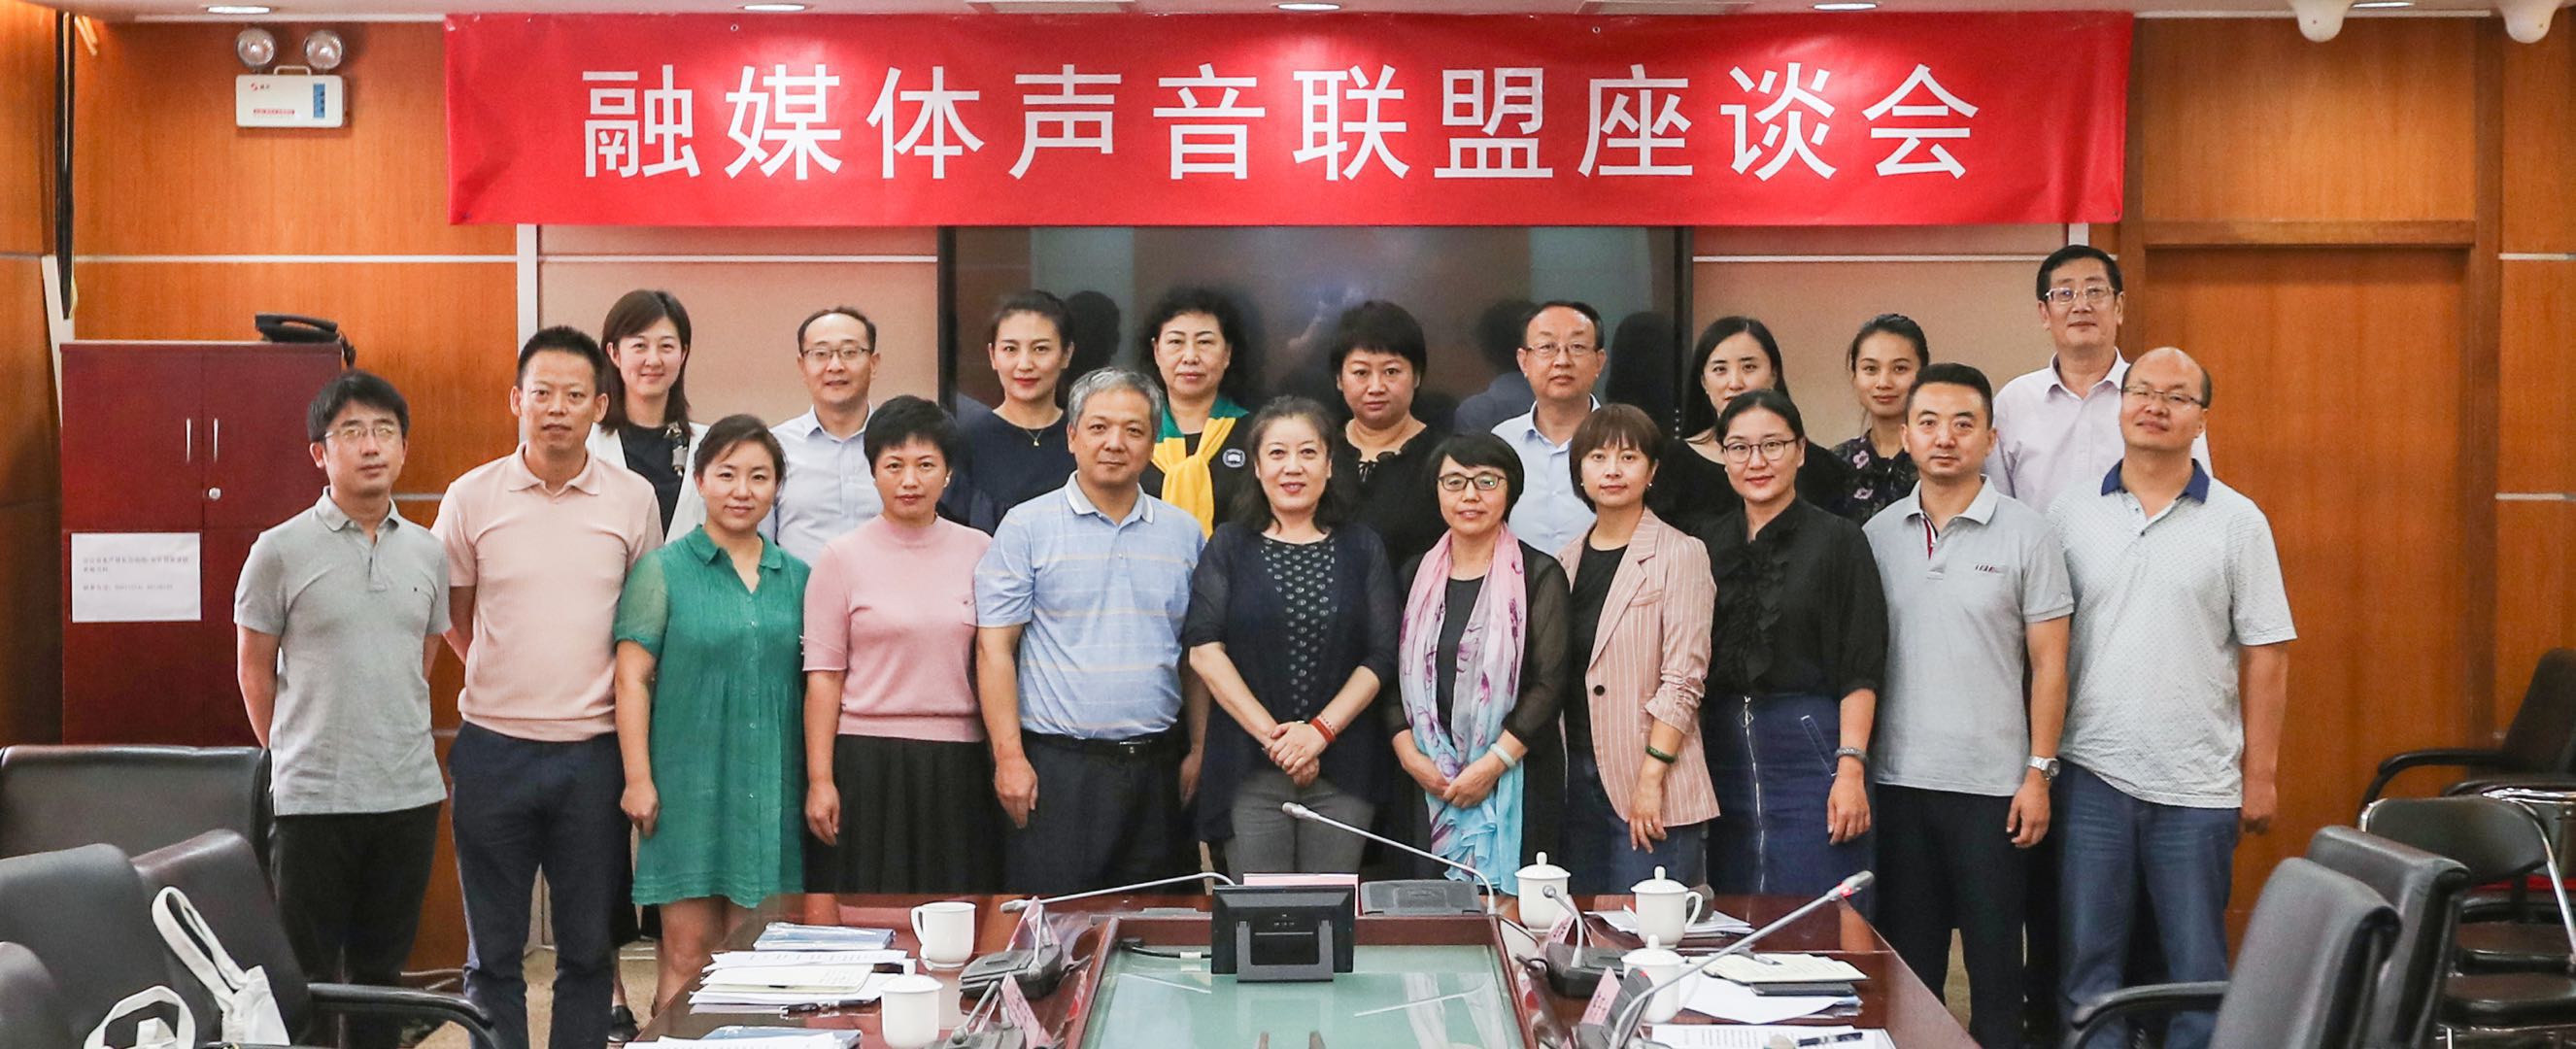 融媒體聲音聯盟在北京成立